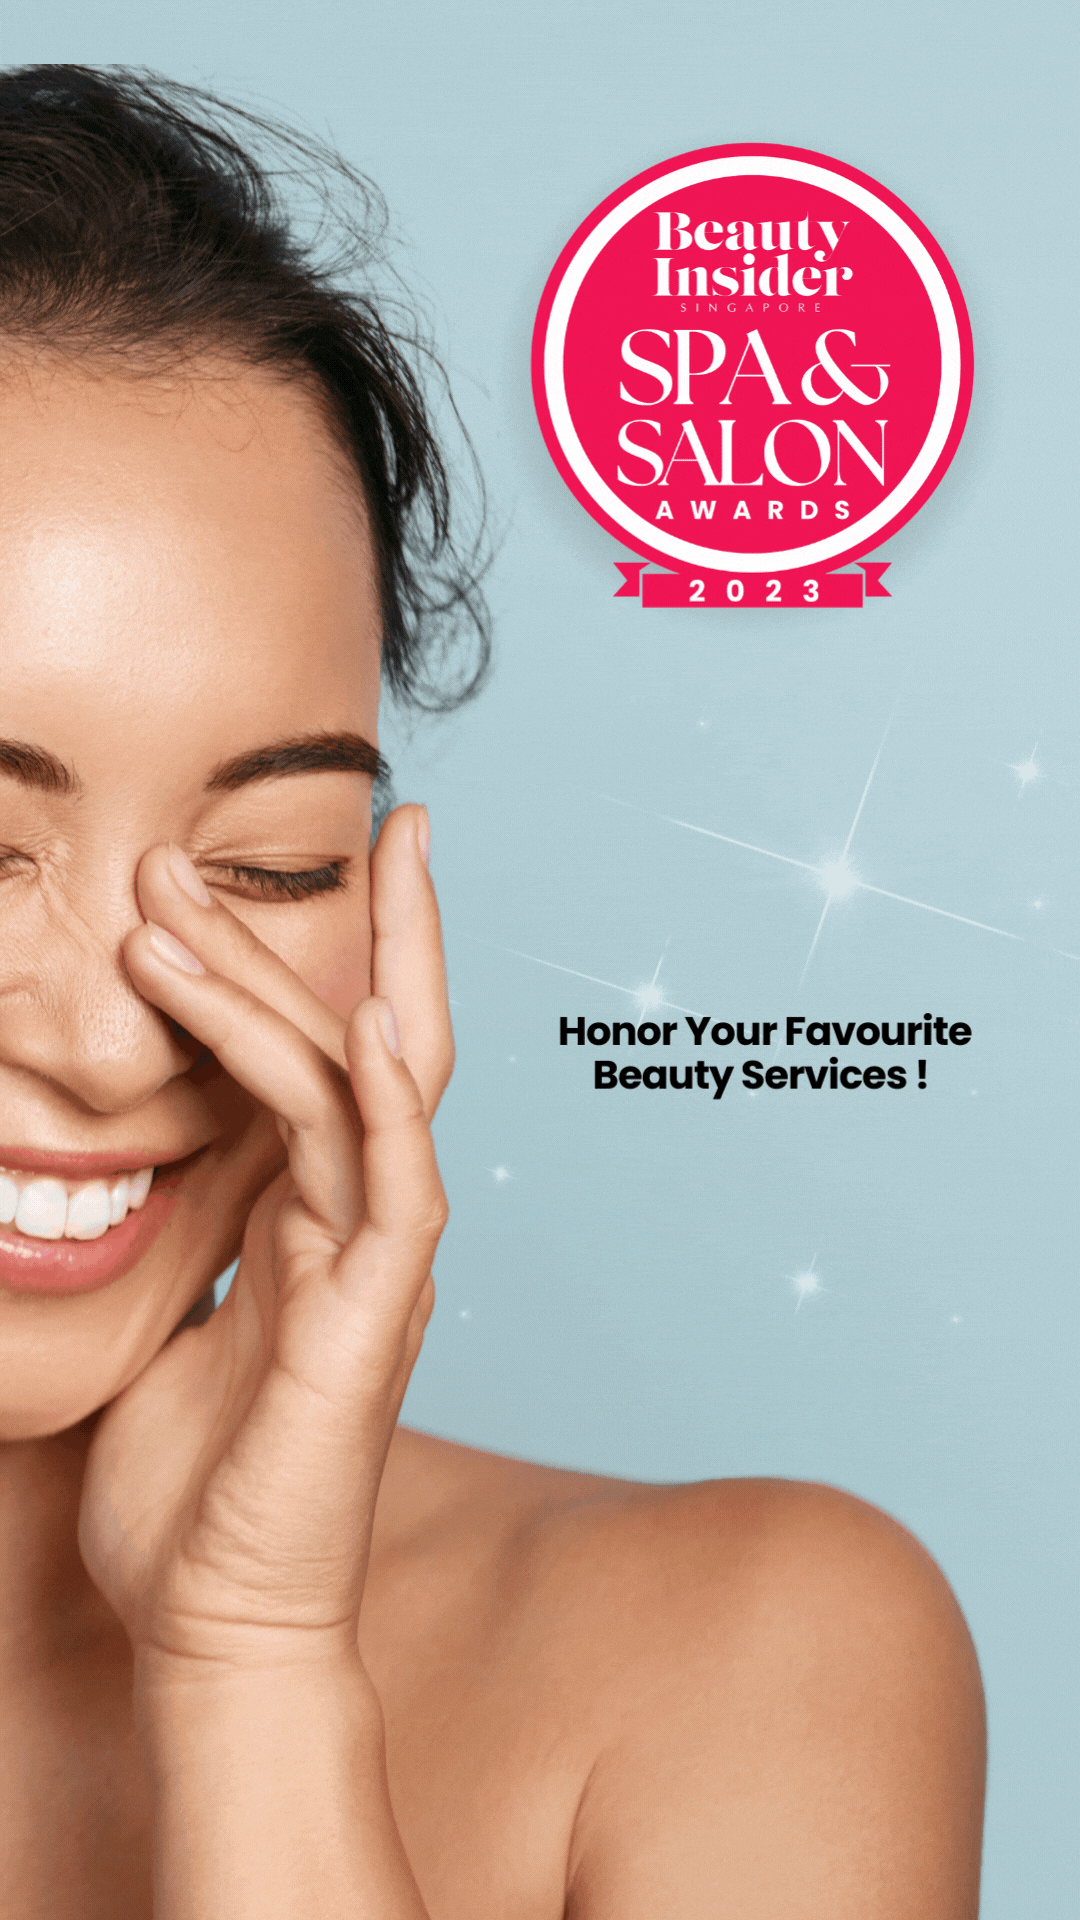 Beauty Insider Salon & Spa Awards 2023